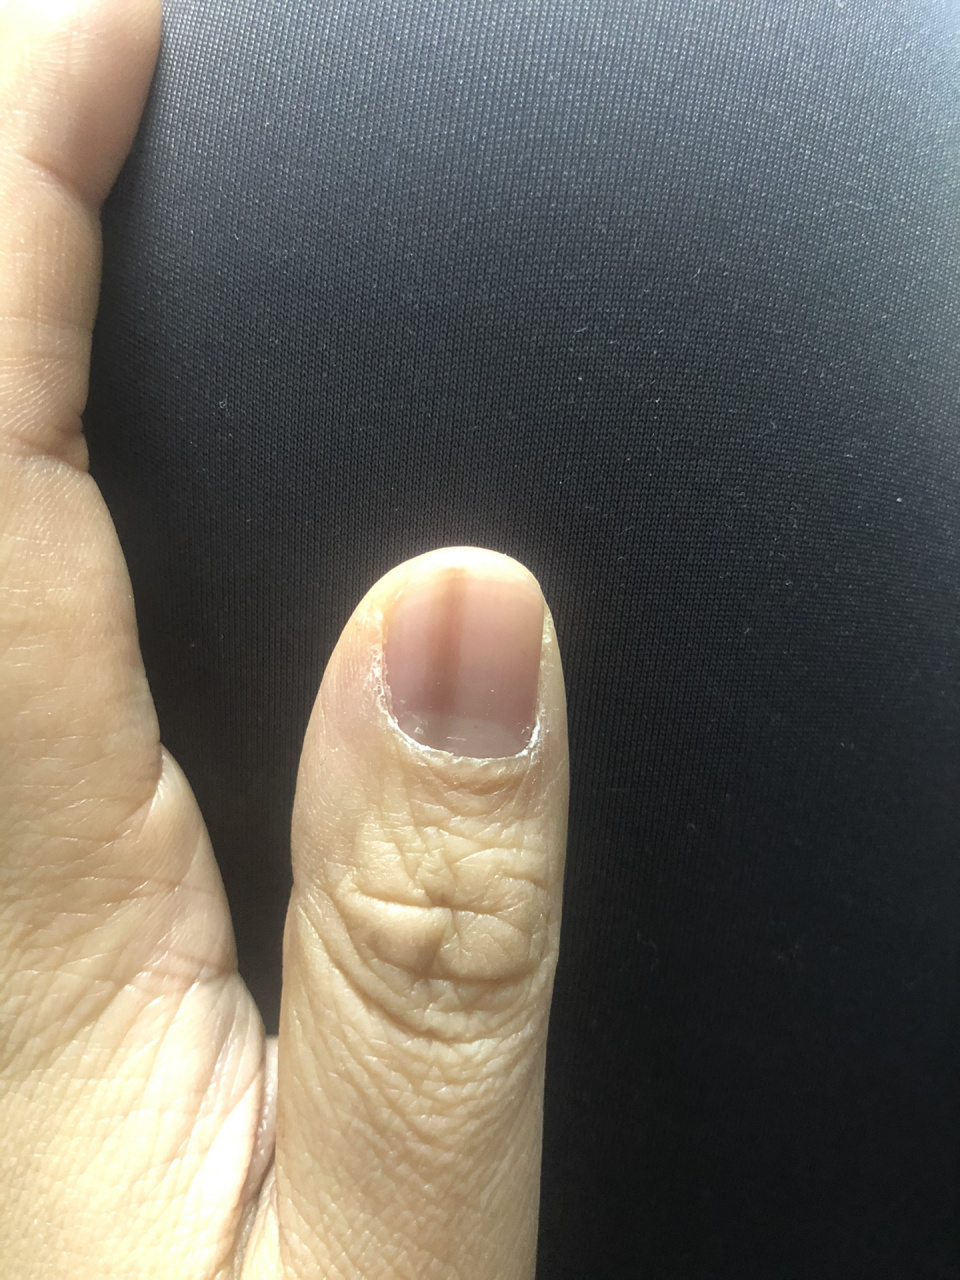 大拇指指甲有一条黑线图片